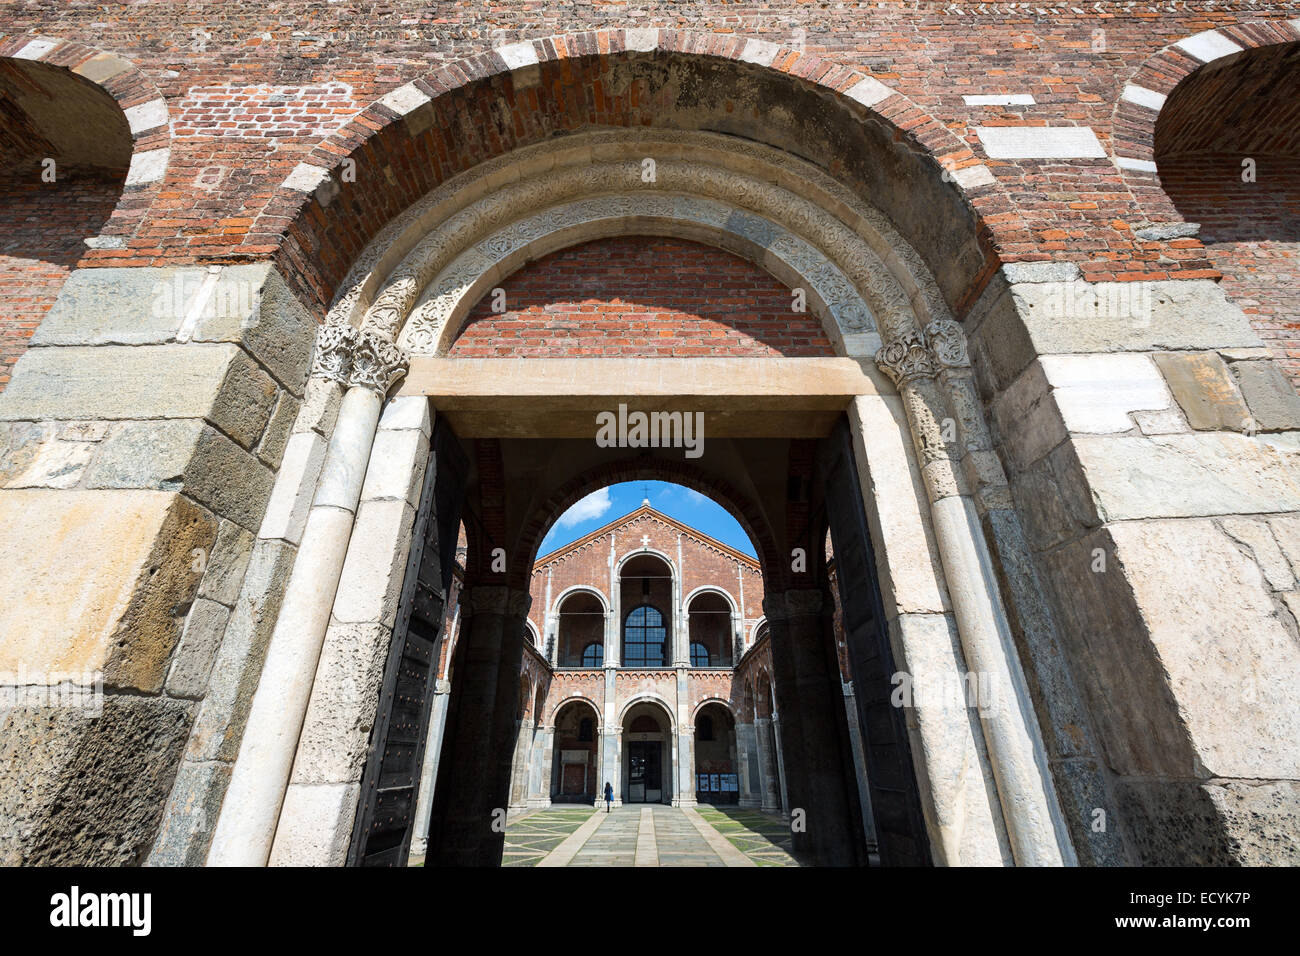 Italy, Lombardy, Milan. Sant'Ambrogio Basilica entrance Stock Photo